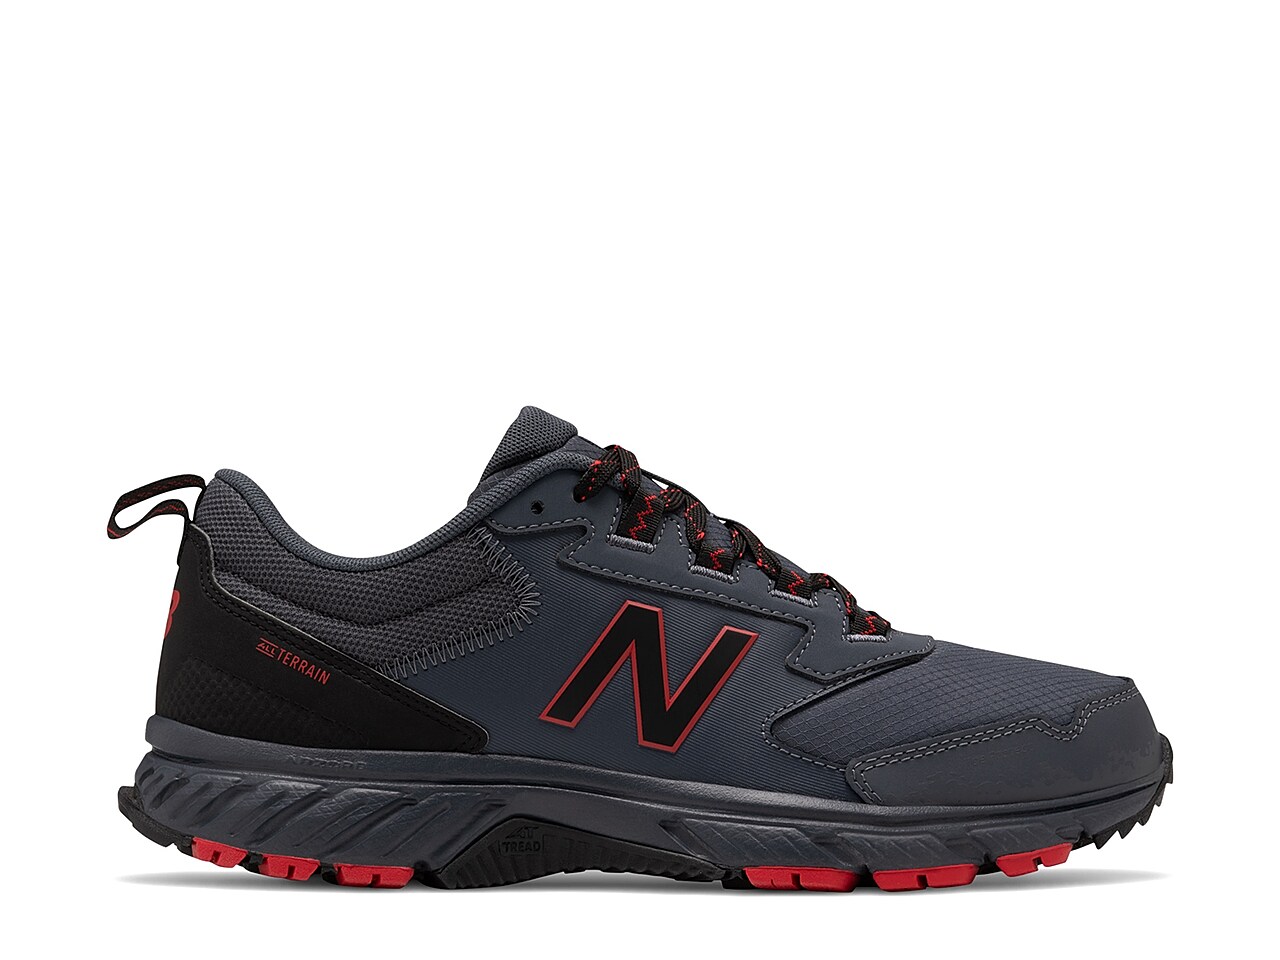 New Balance 510 v5 Trail Running Shoe - Men's